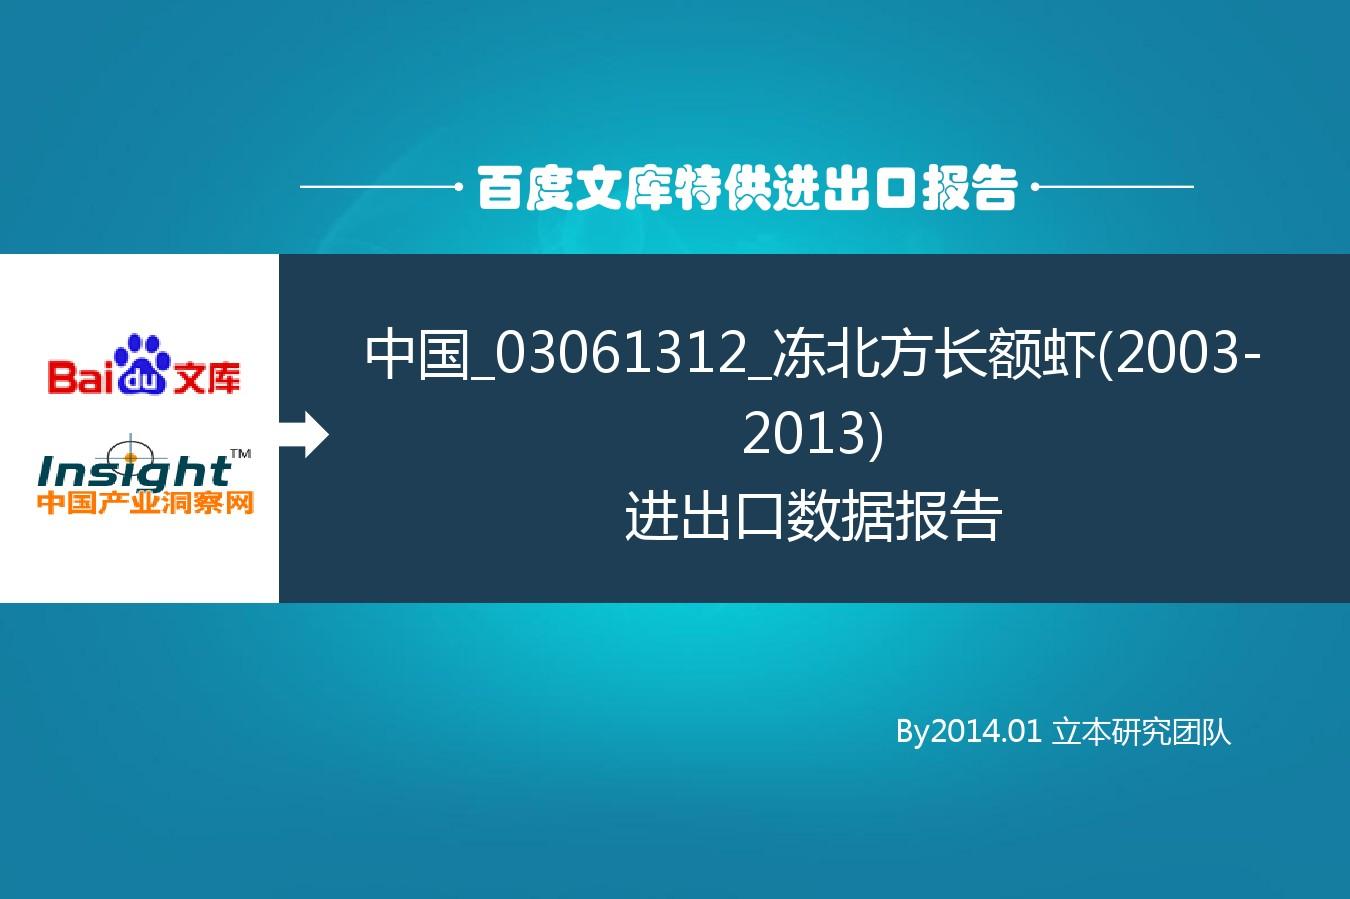 中国_03061312_冻北方长额虾(2003-2013)进出口数据报告